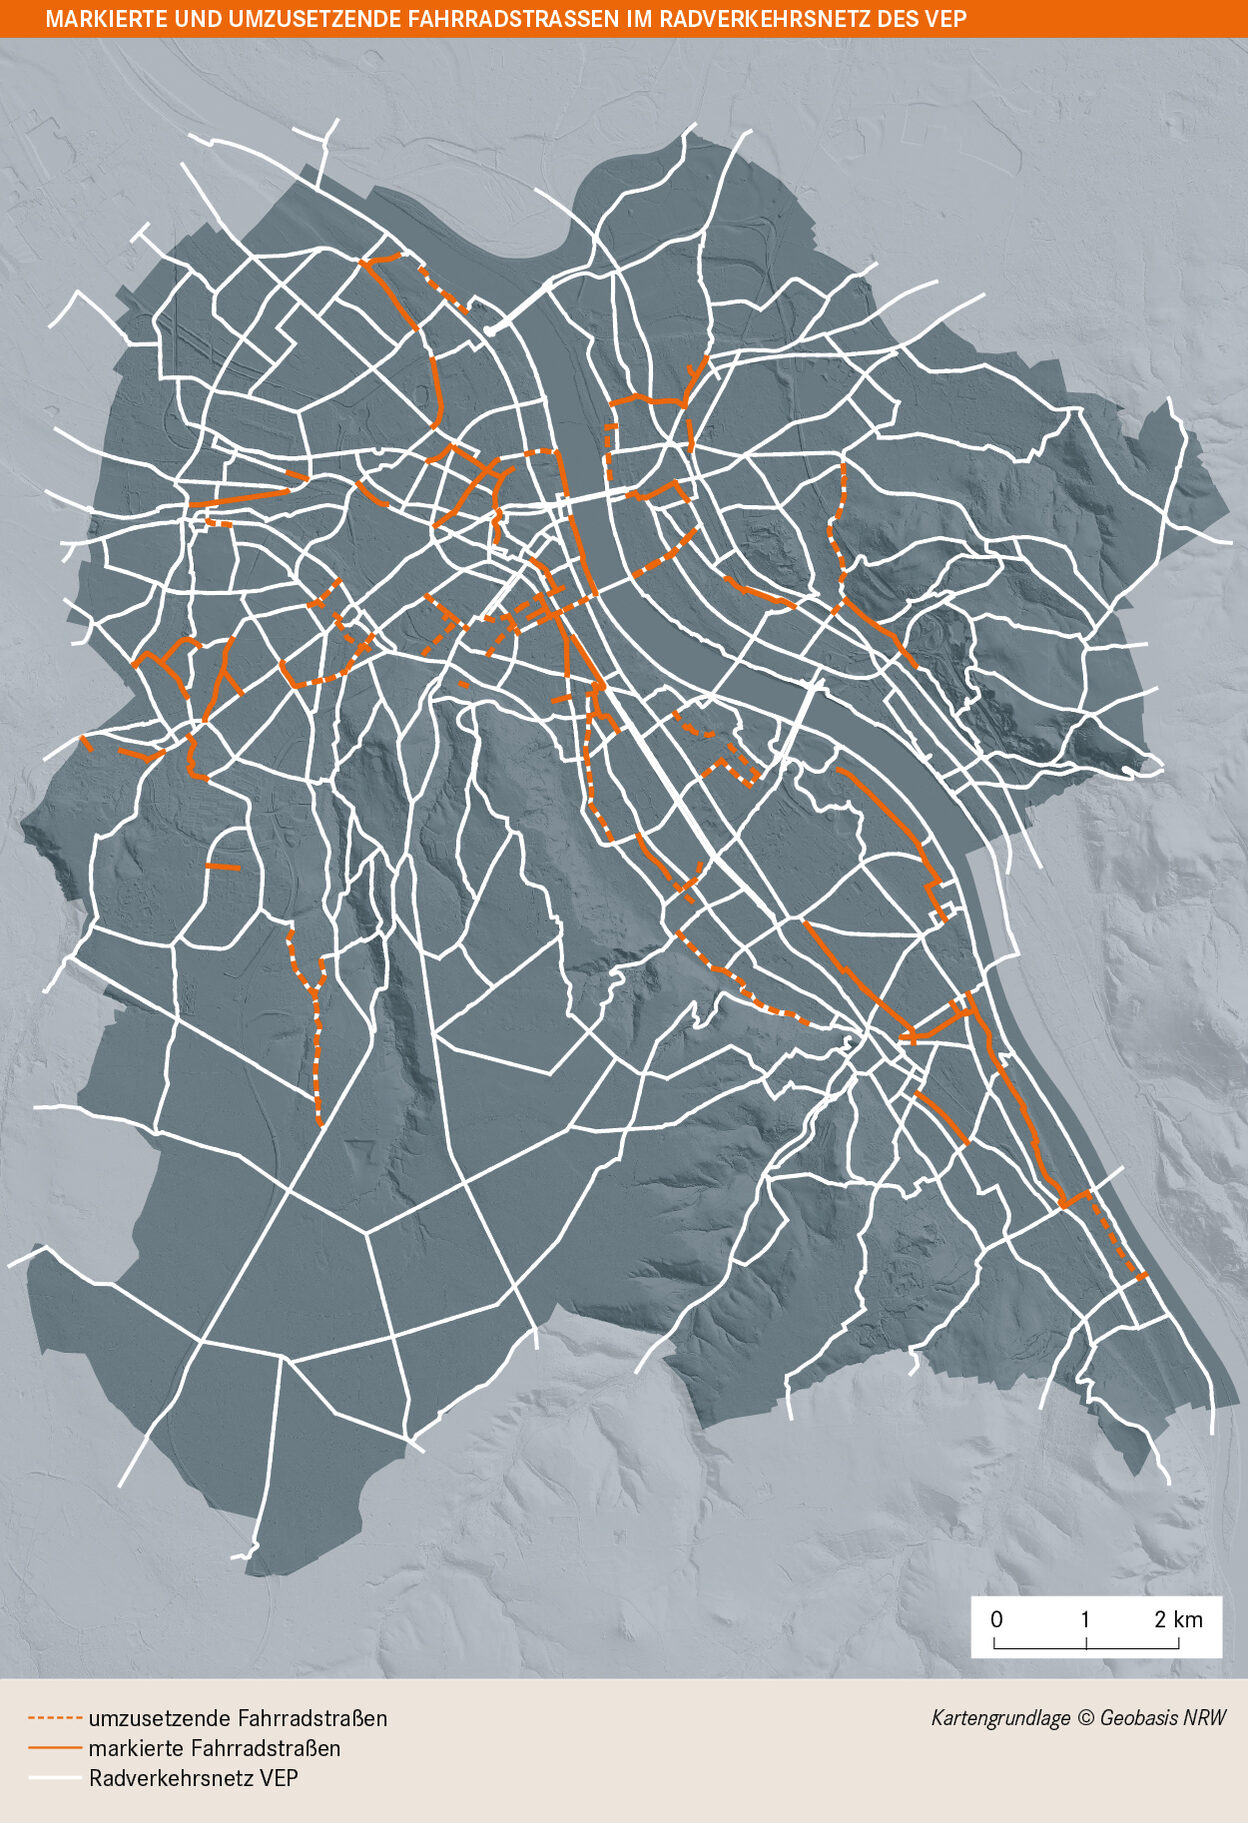 Die Karte zeigt markierte und umzusetzende Fahrradstraßen im Radverkehrsnetz in Bonn.